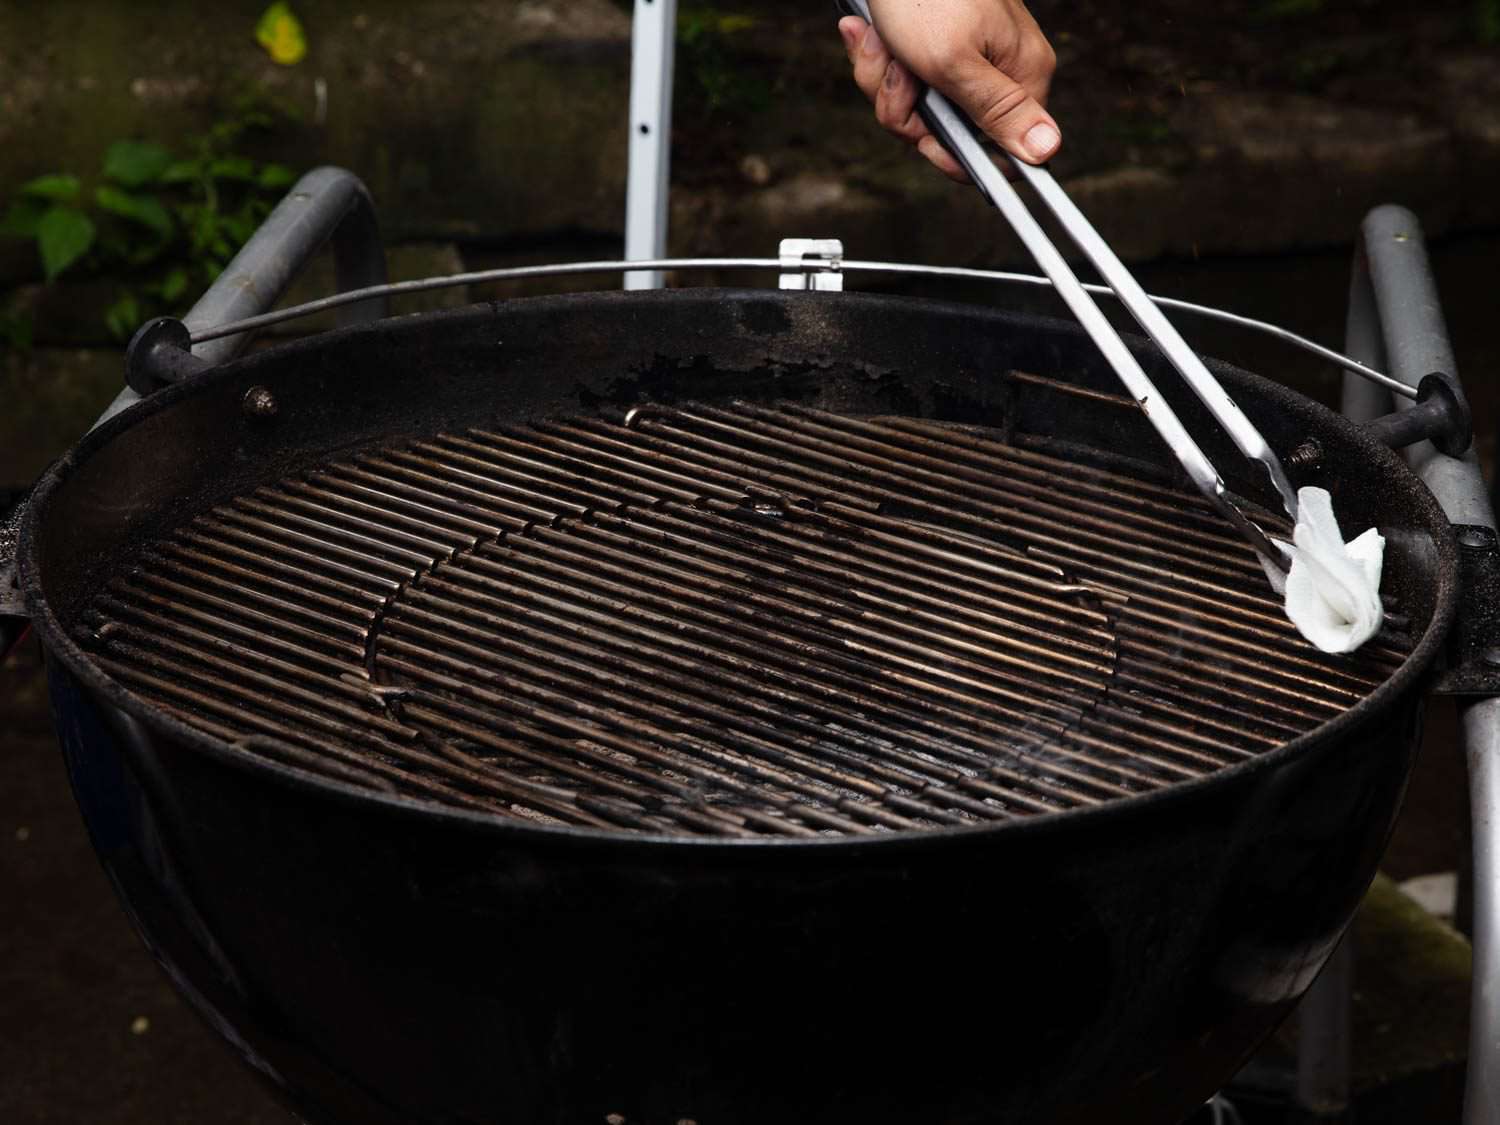 清洁并给预热好的烤架格栅上油:这是任何烧烤食谱必不可少的步骤，尤其是鱼